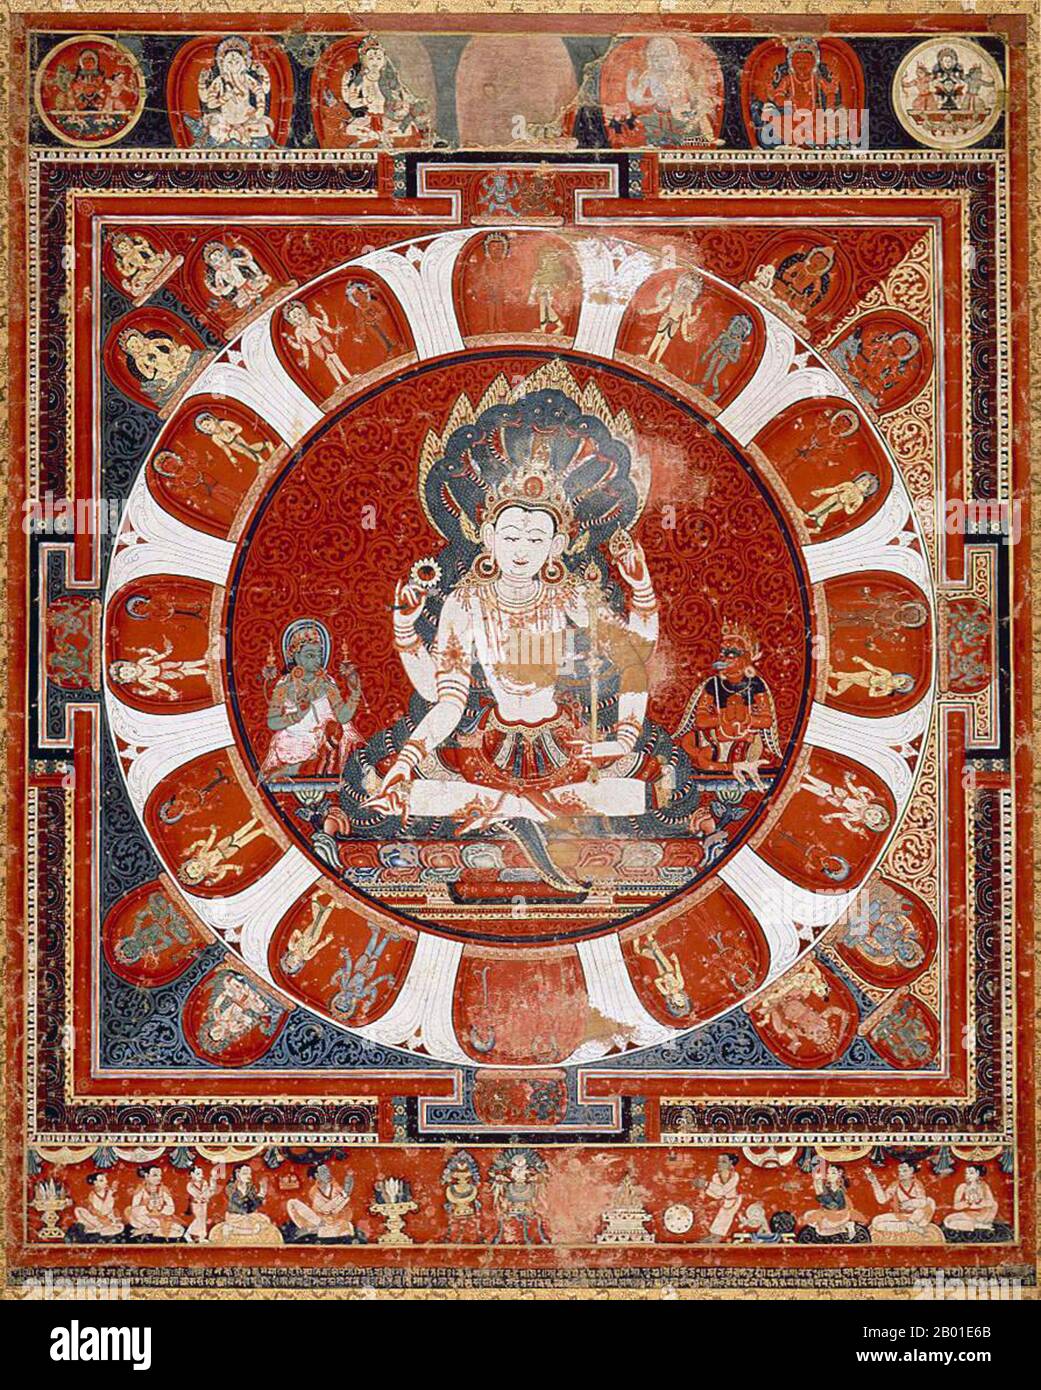 Népal: Vishnu mandala paubha (peinture religieuse) sur toile de coton de Jayateja (fl. 15th siècle), début 15th siècle. Vishnu (Sanskrit विष्णु Viṣṇu) est le Dieu suprême dans la tradition vaishnavite de l'hindouisme. Les disciples de Smarta d'Adi Shankara, entre autres, vénèrent Vishnu comme l'une des cinq formes primaires de Dieu. Le Vishnu Sahasranama déclare le Vishnu comme Paramatma (âme suprême) et Parameshwara (Dieu suprême). Il décrit Vishnu comme l'essence omniprésente de tous les êtres, le maître du passé, du présent et du futur, qui soutient, soutient et gouverne l'Univers. Banque D'Images